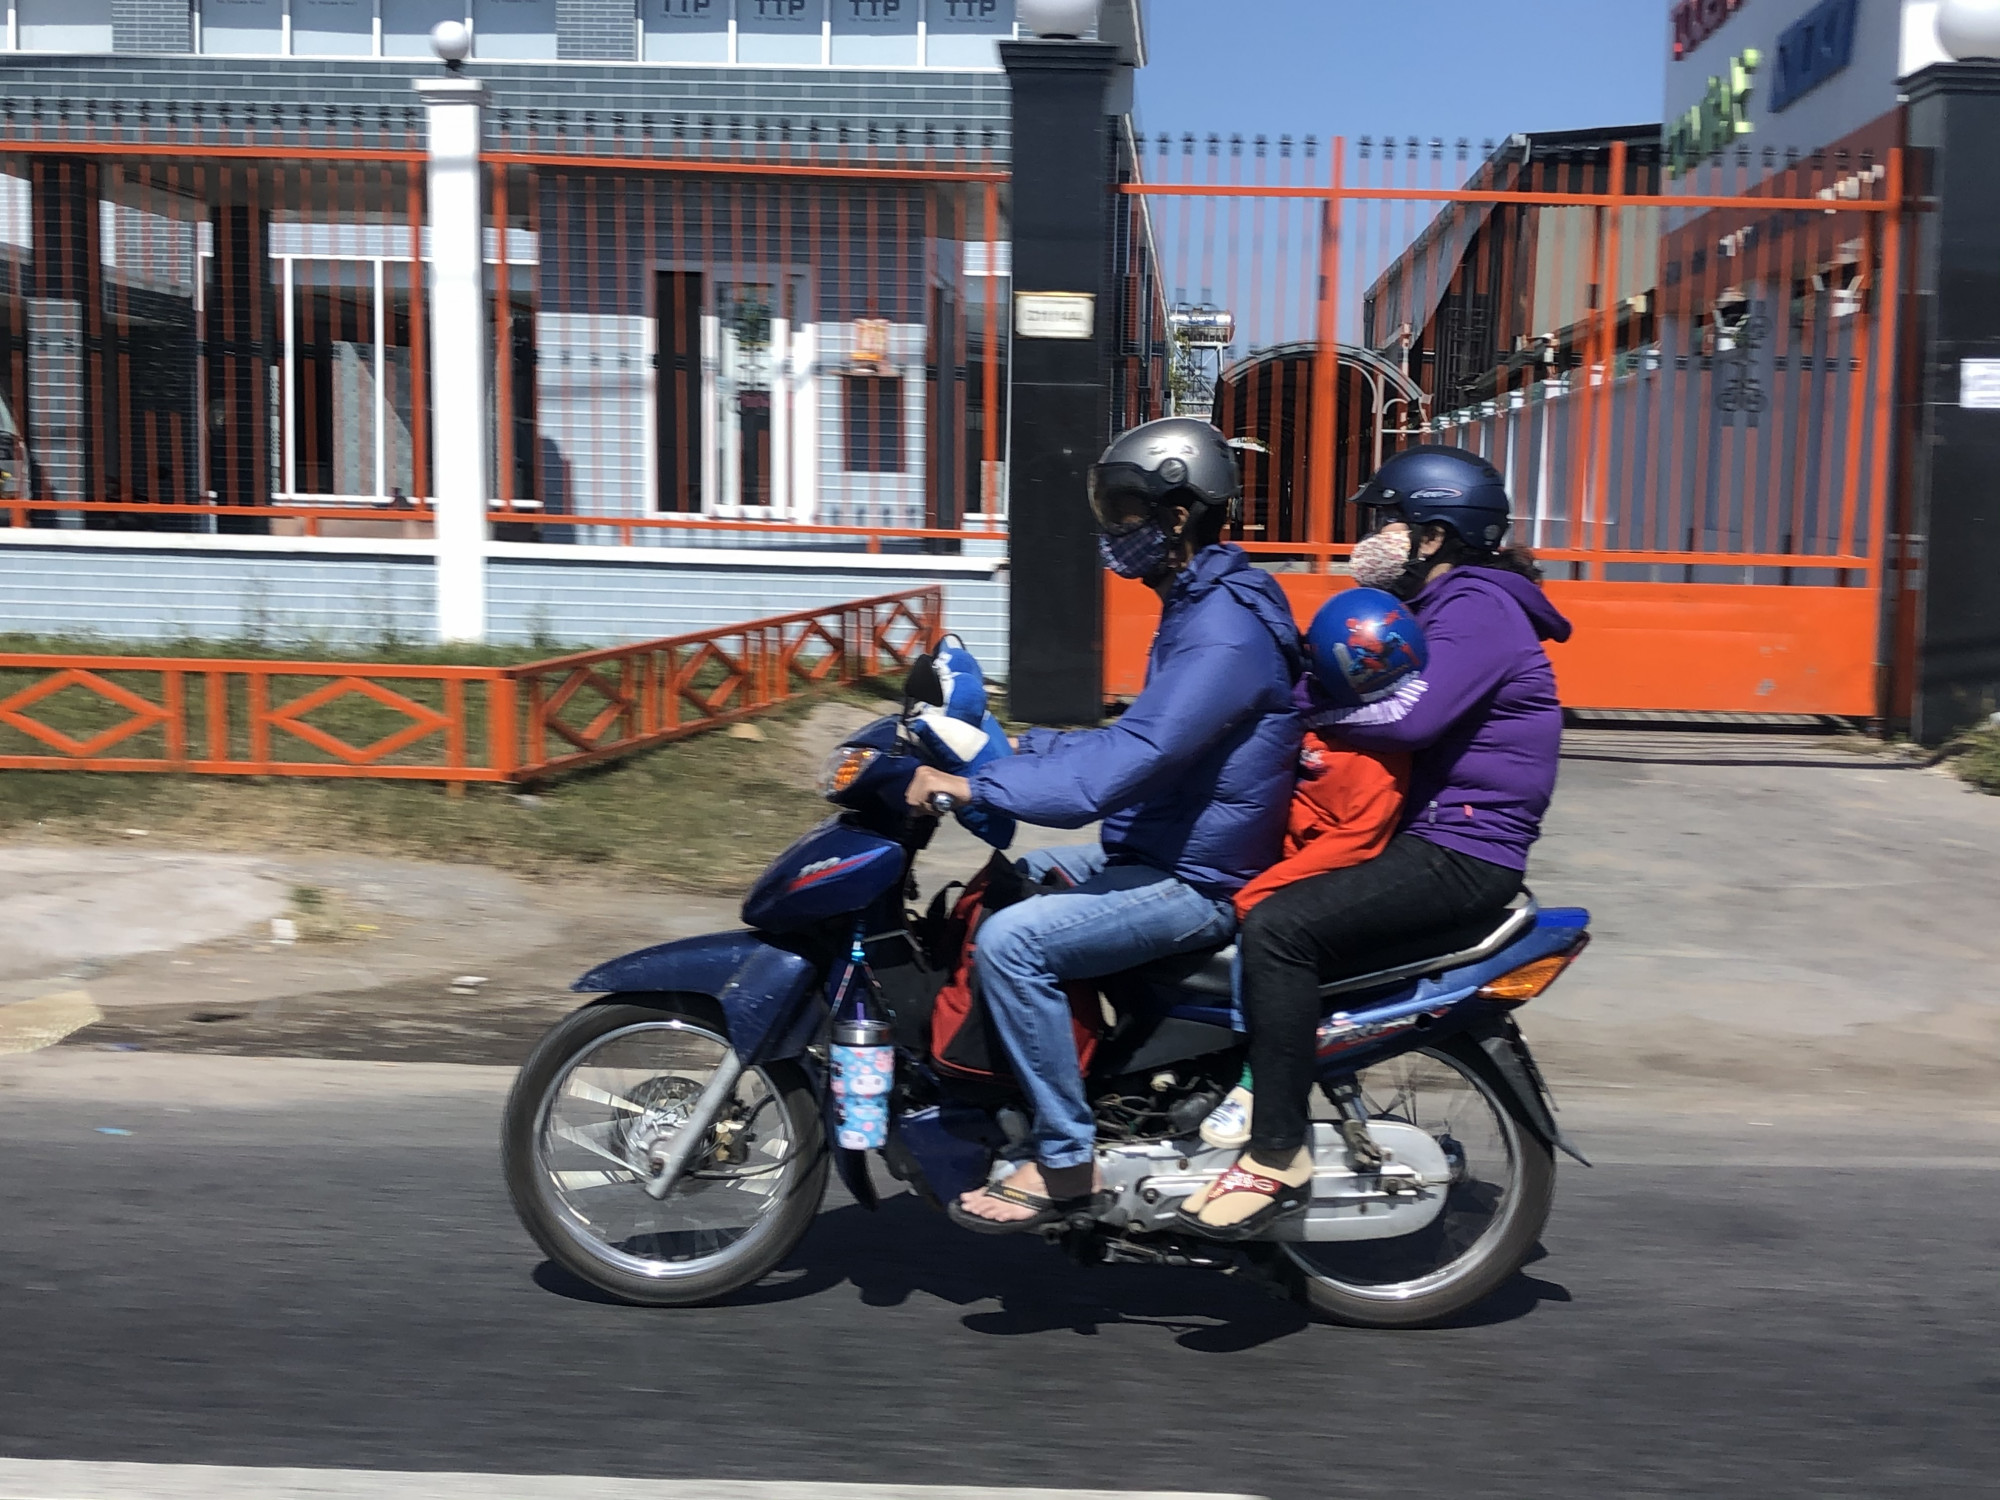 Trên cung đường Nguyễn Văn Linh về hướng miền Tây, nhiều gia đình chở nhau bằng xe máy, đùm bọc vali, túi xách để kịp về quê ăn bữa cơm cùng ông bà ngày mùng 1 Tết